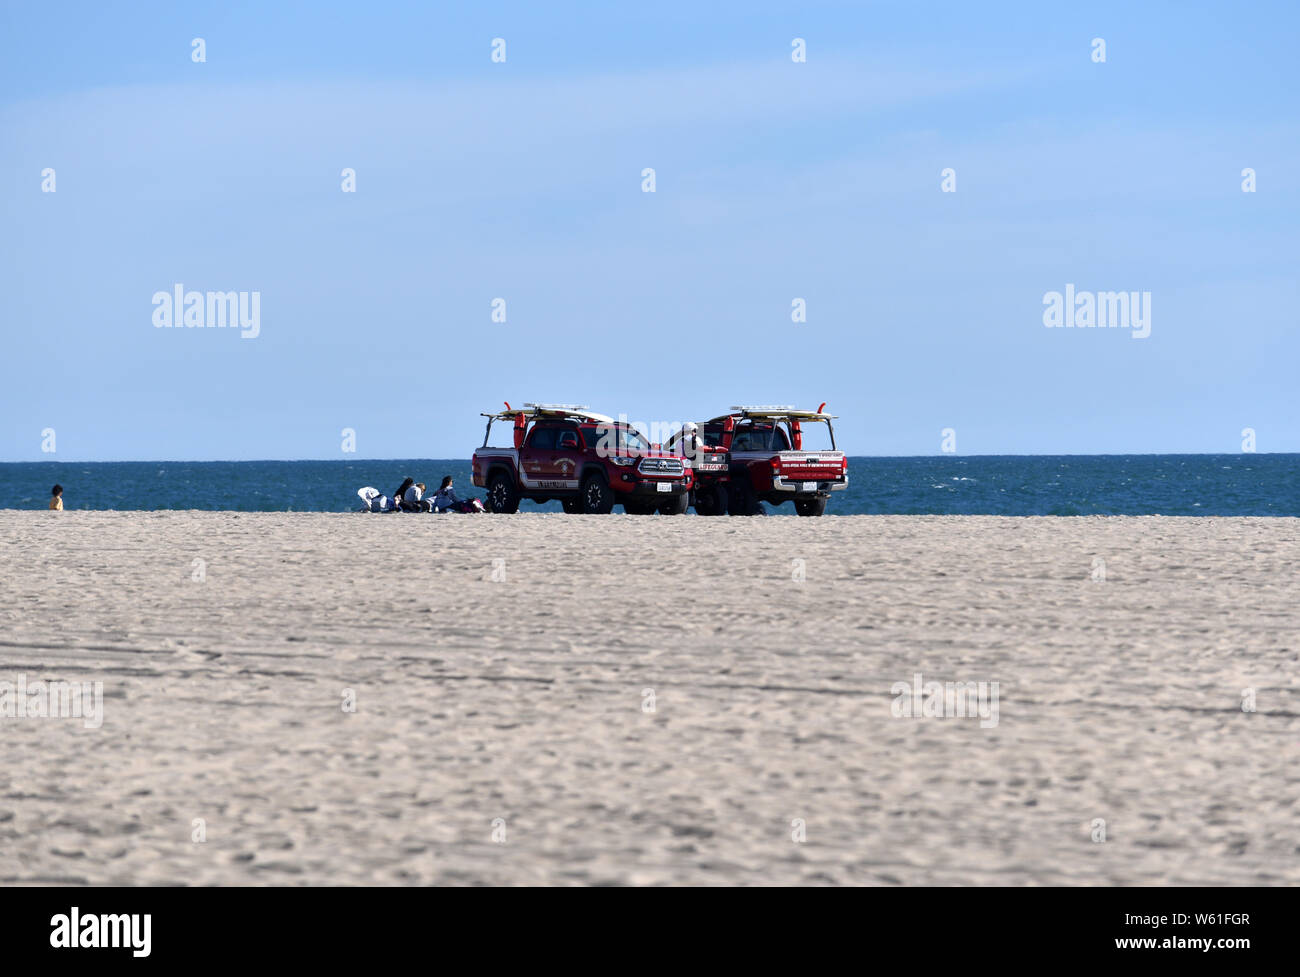 HUNTINGTON BEACH, CA/USA - MARCH 14, 2019: Lifeguard patrol on the beach on a sunny day Stock Photo